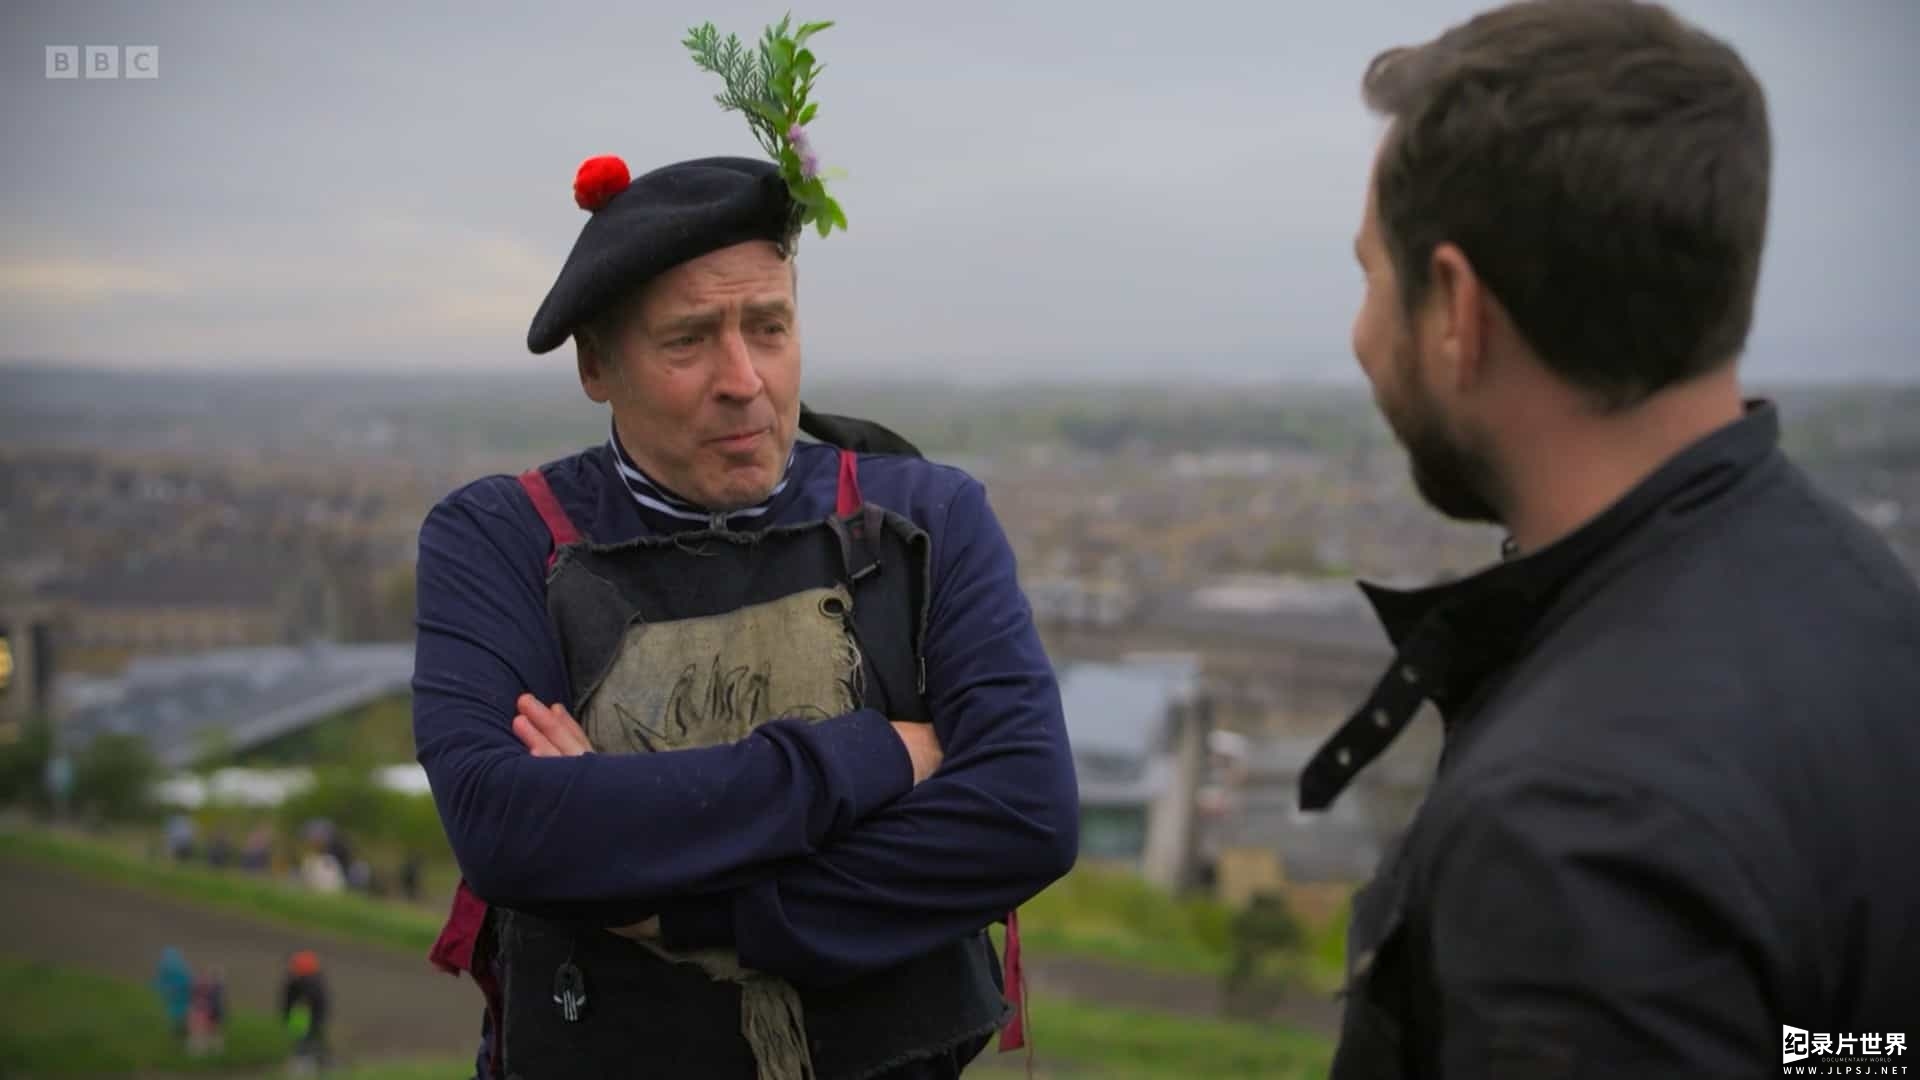 BBC纪录片《马丁·康普斯顿的苏格兰狂欢 Martin Compston's Scottish Fling 2022》全6集